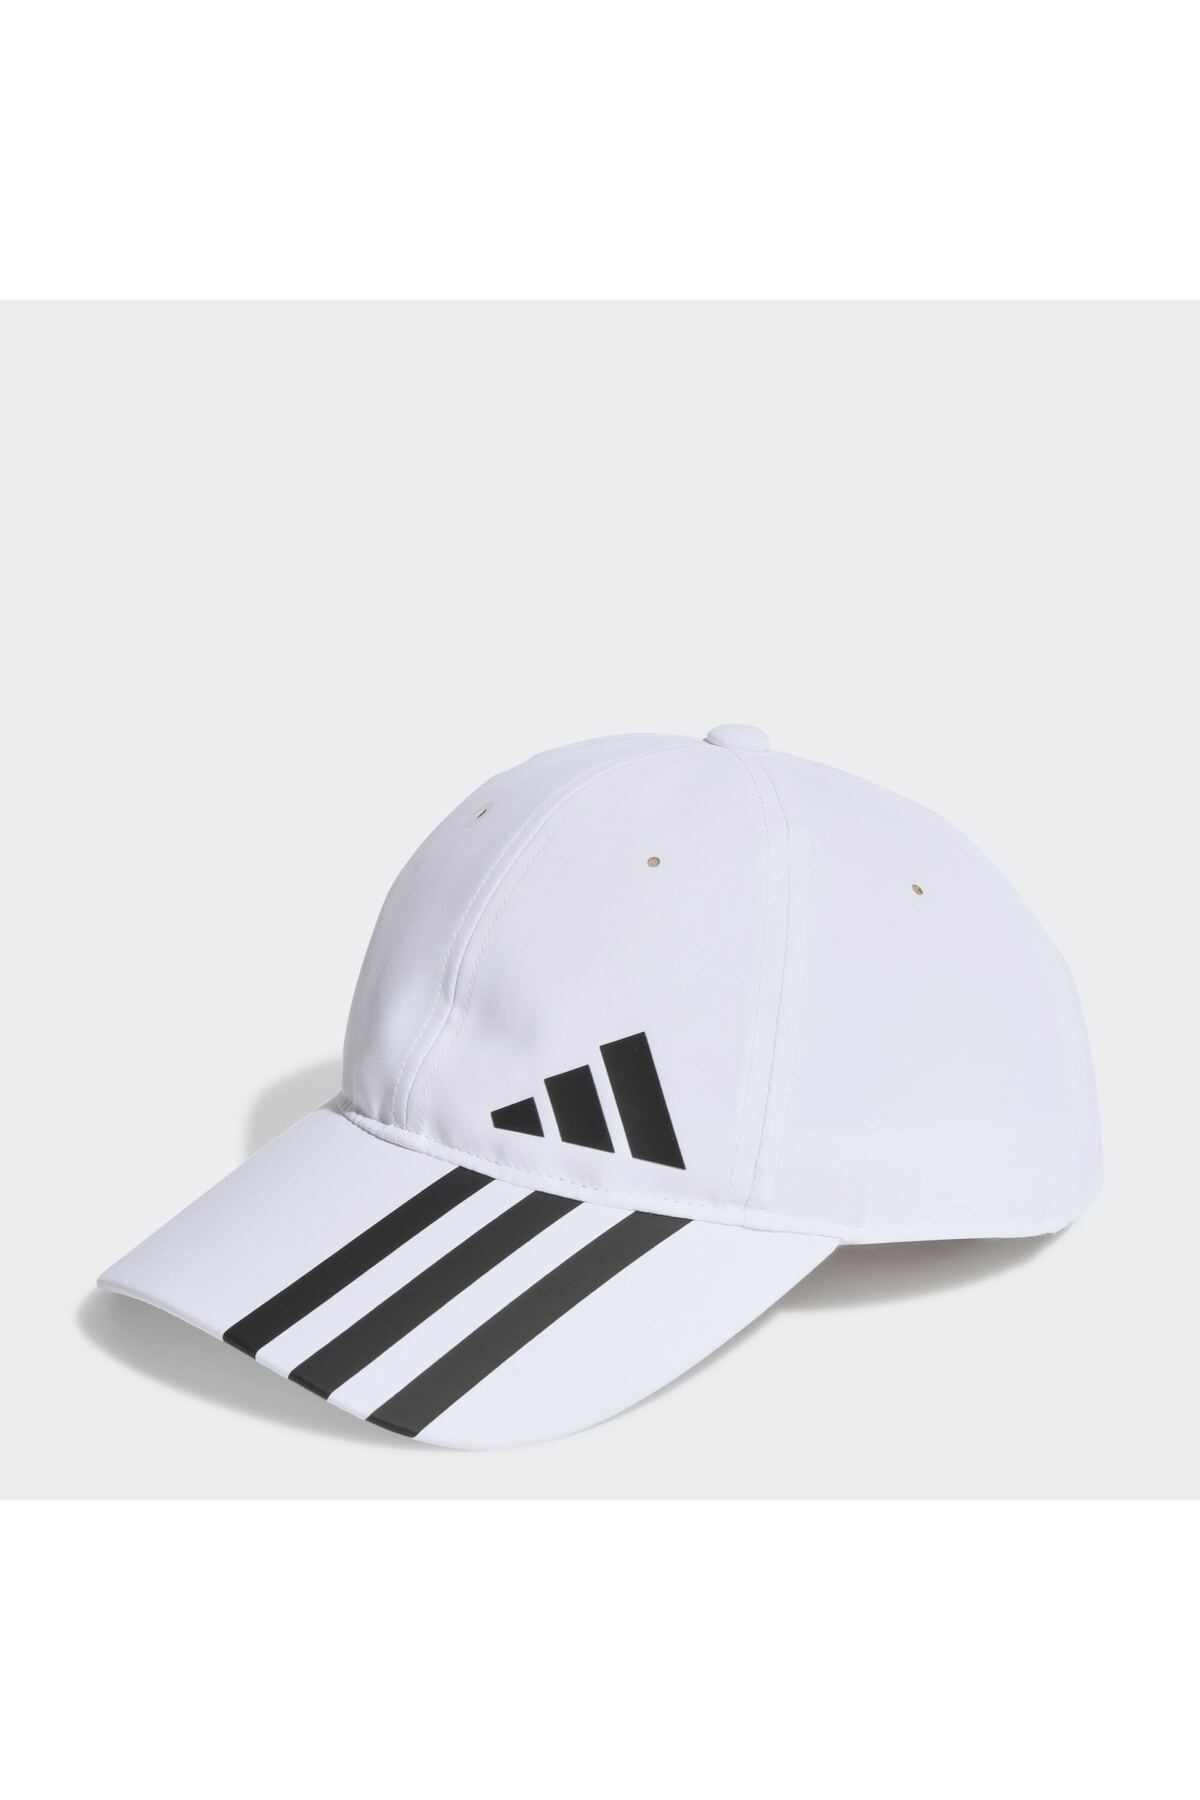 adidas کلاه بیس بال 3 نوری هوایی